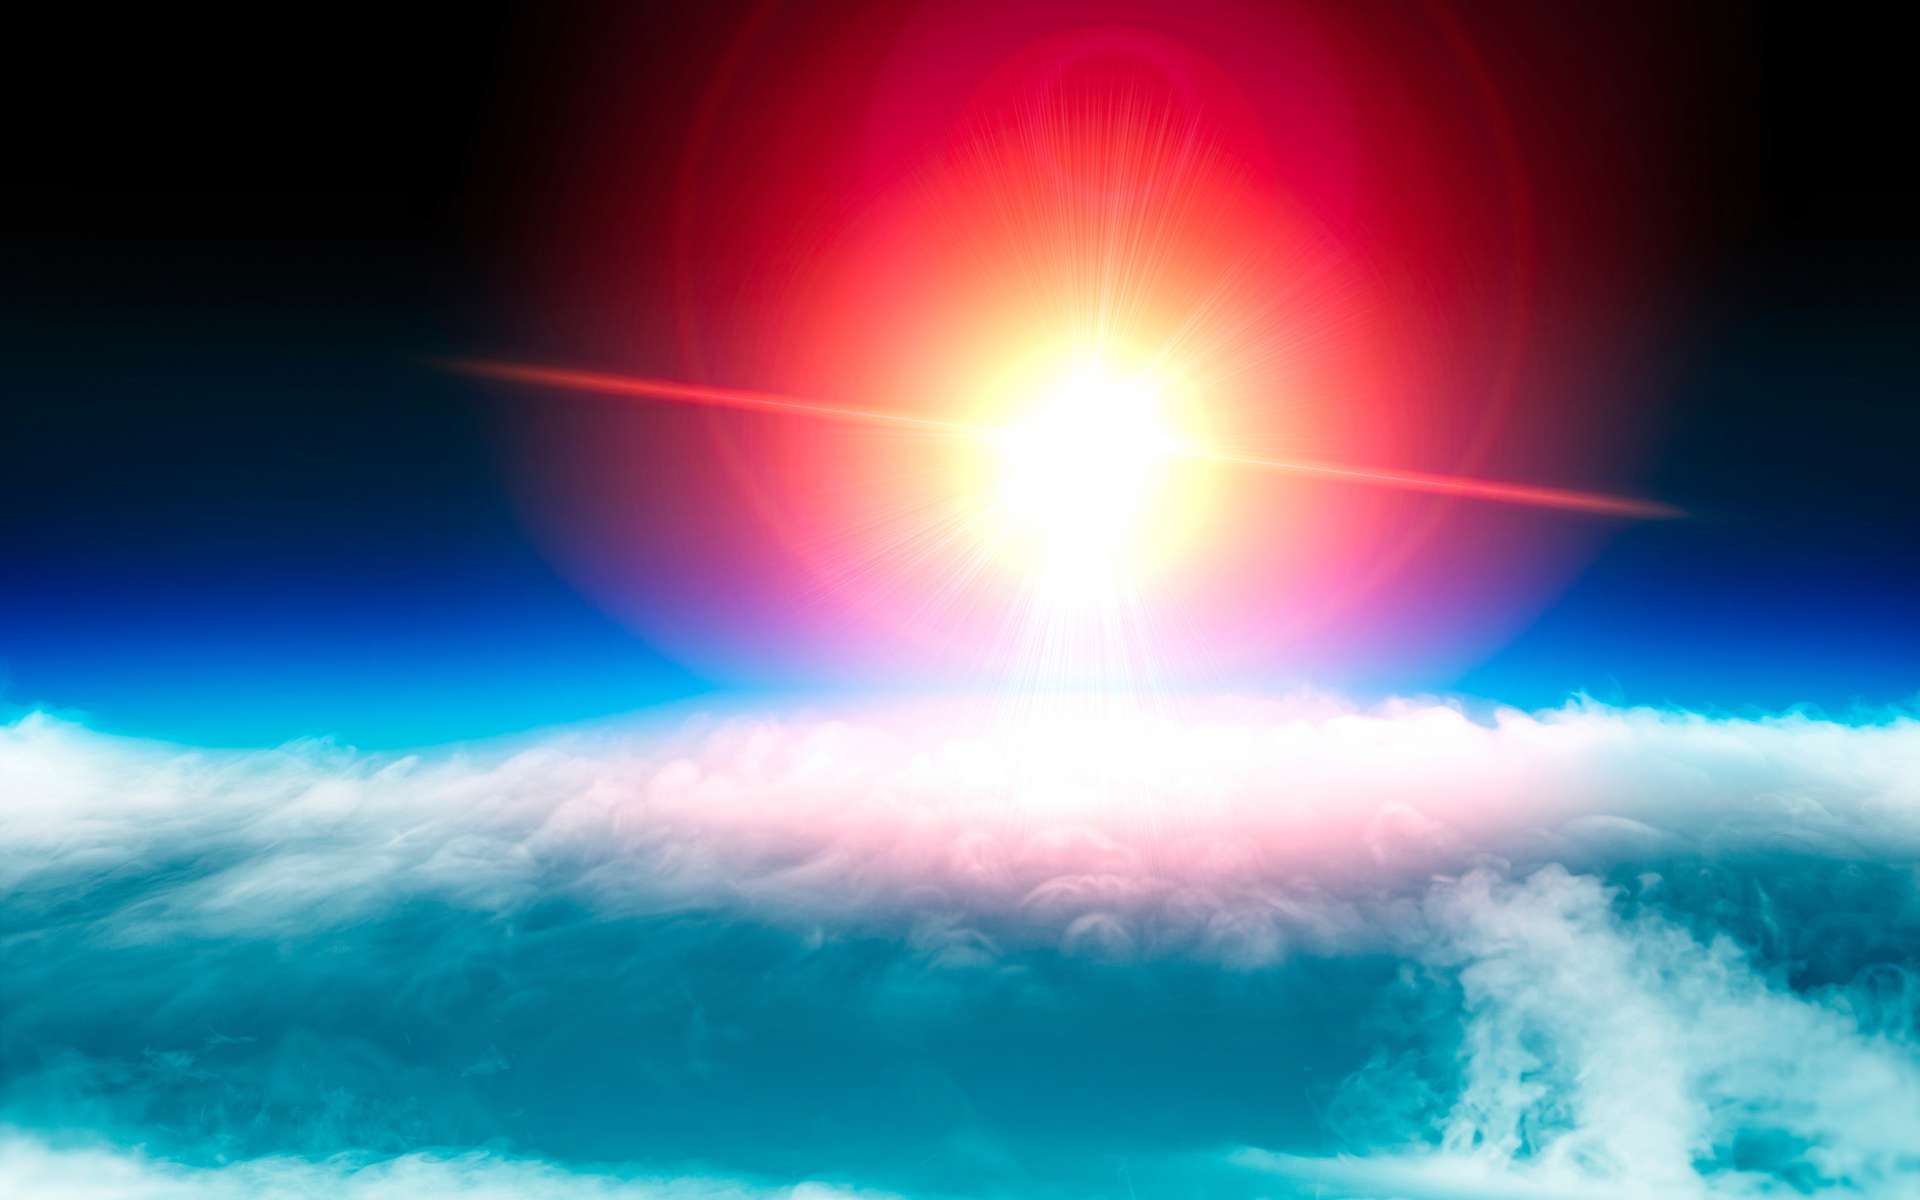 Le trou dans la couche d'ozone ne serait finalement pas en voie de guérison selon un nouveau rapport